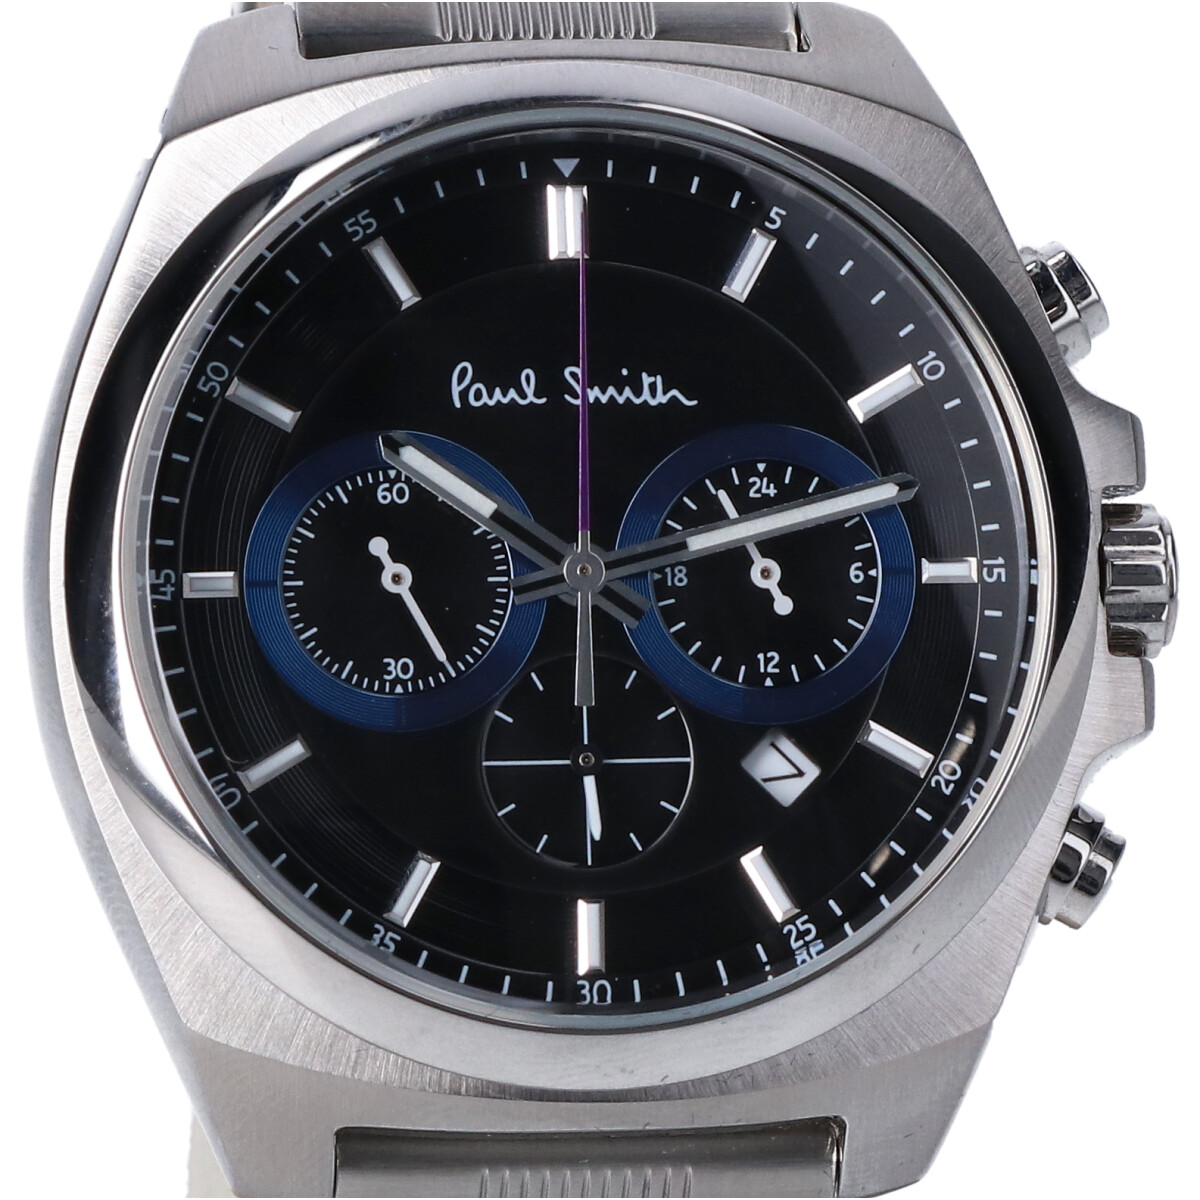 ポールスミスの0520-S092388 ファイナルアイズ クロノグラフ クオーツ 腕時計の買取実績です。